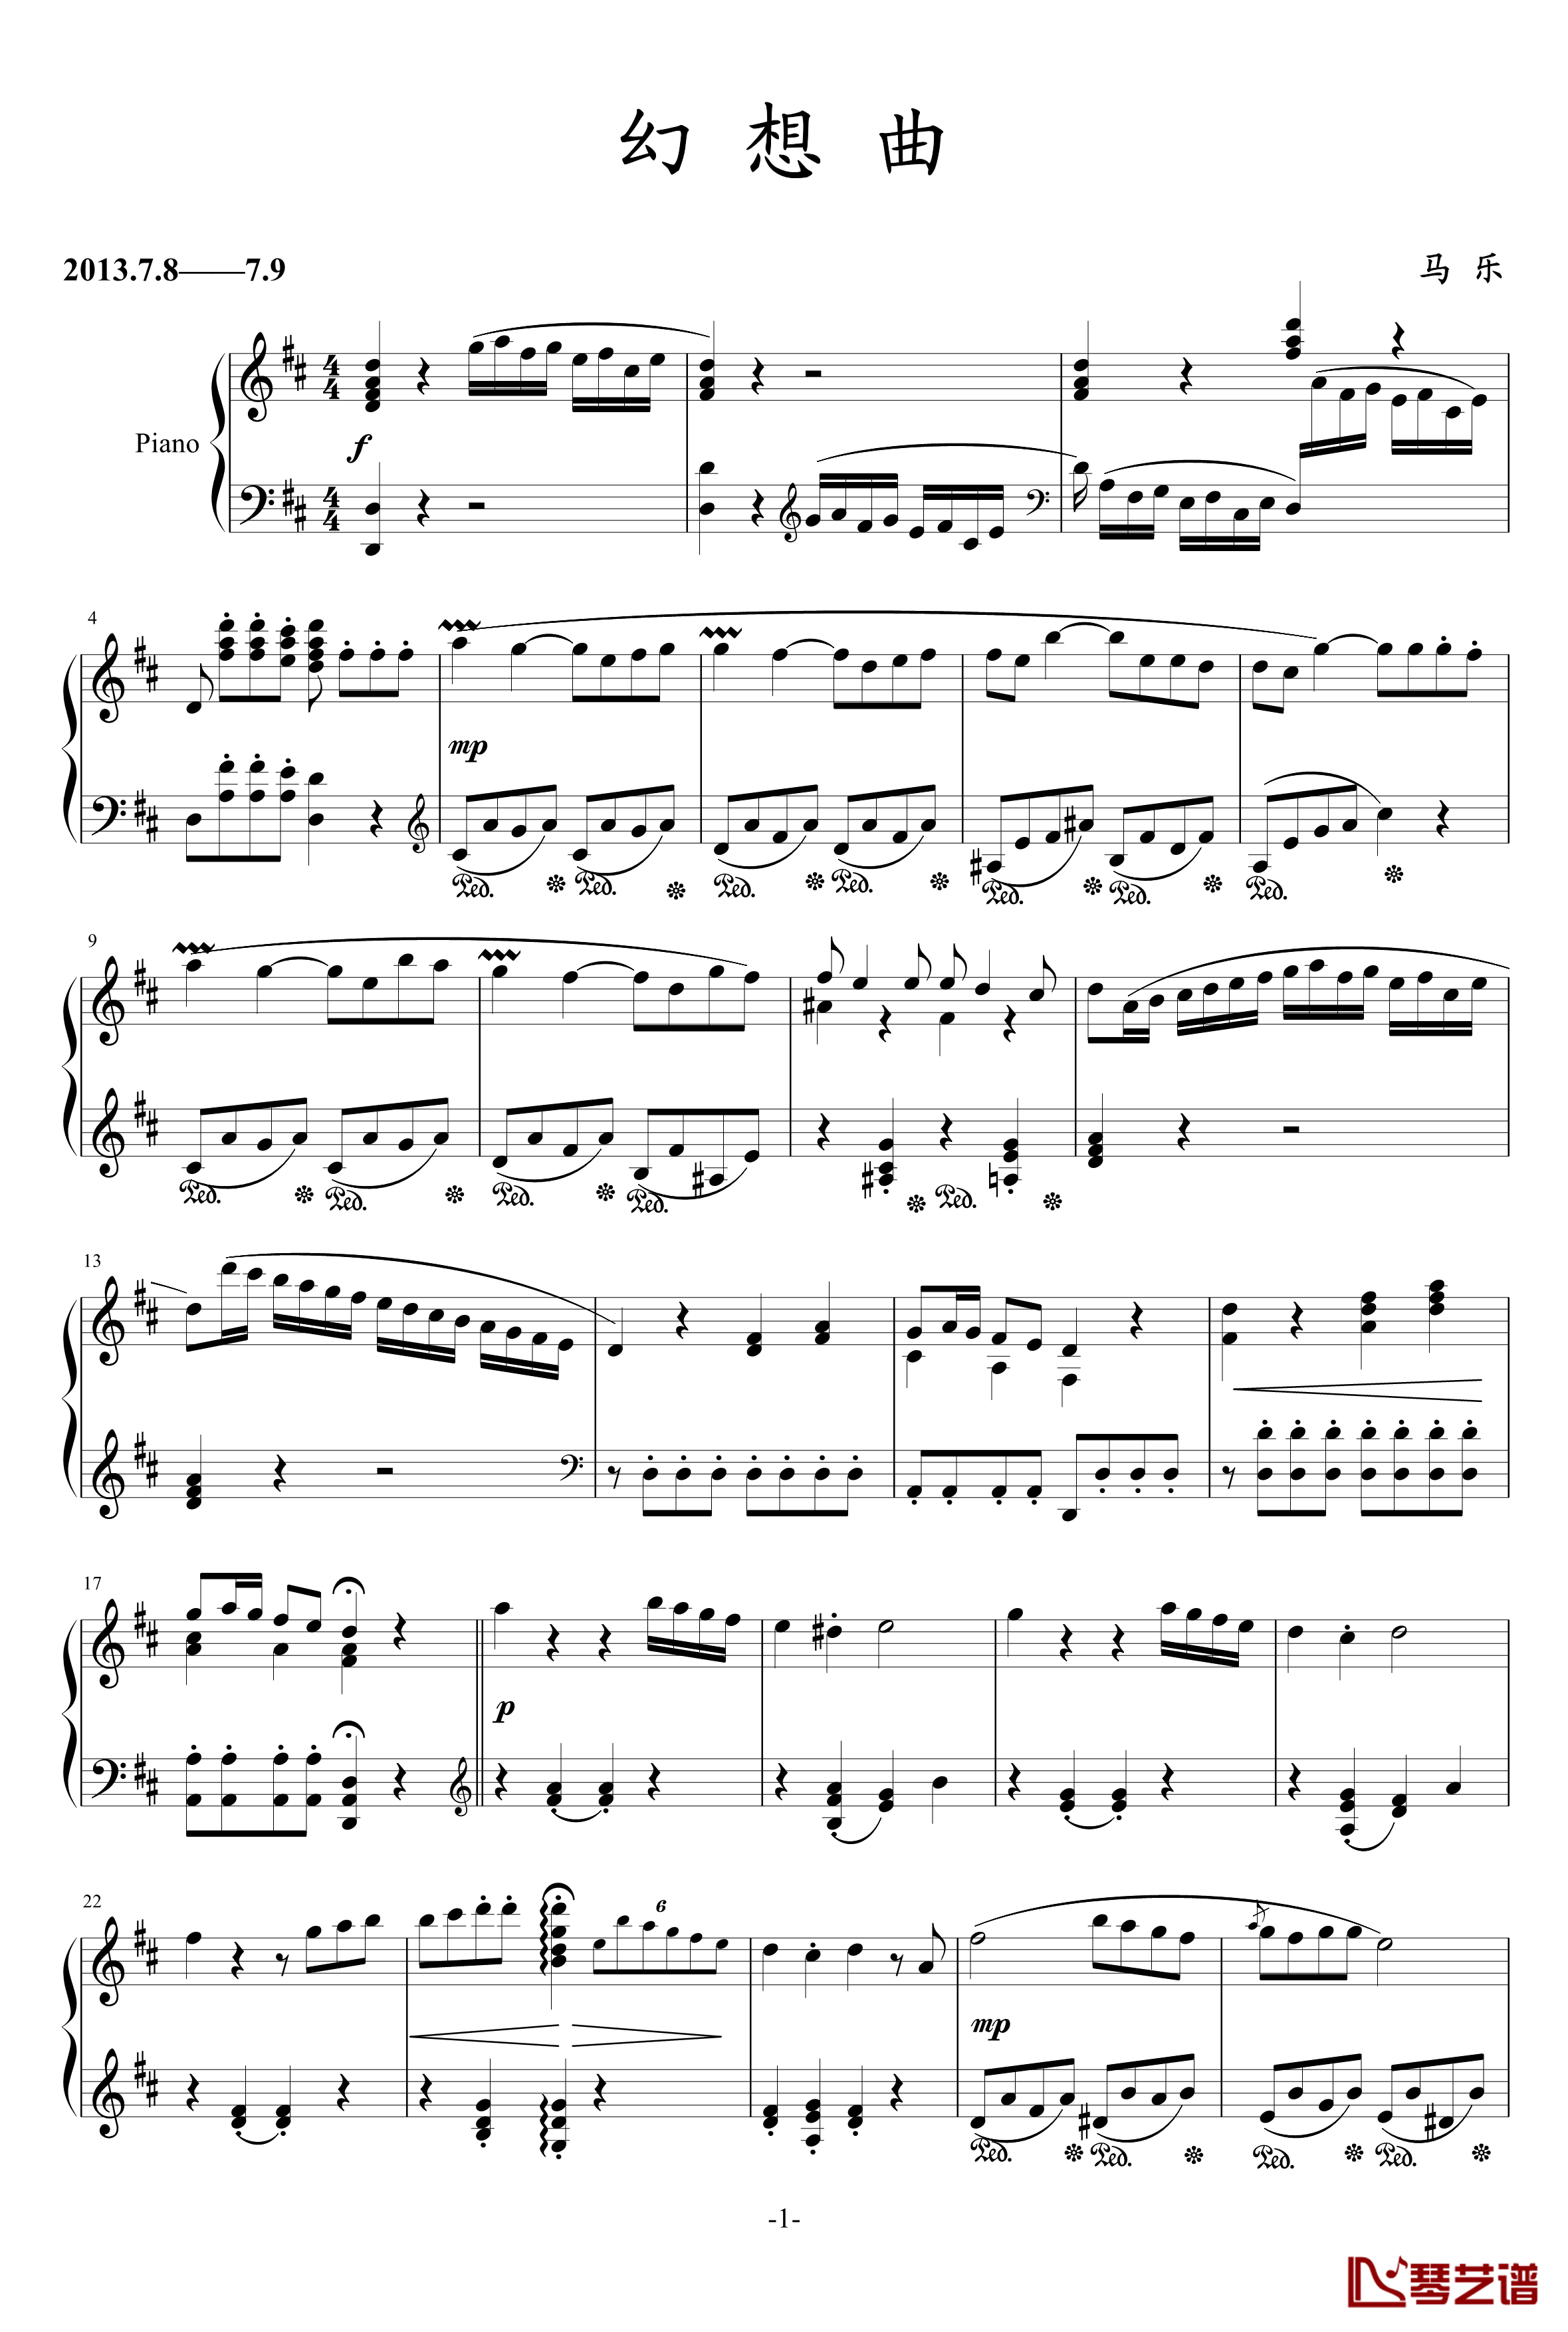 幻想曲-乐之琴-钢琴谱